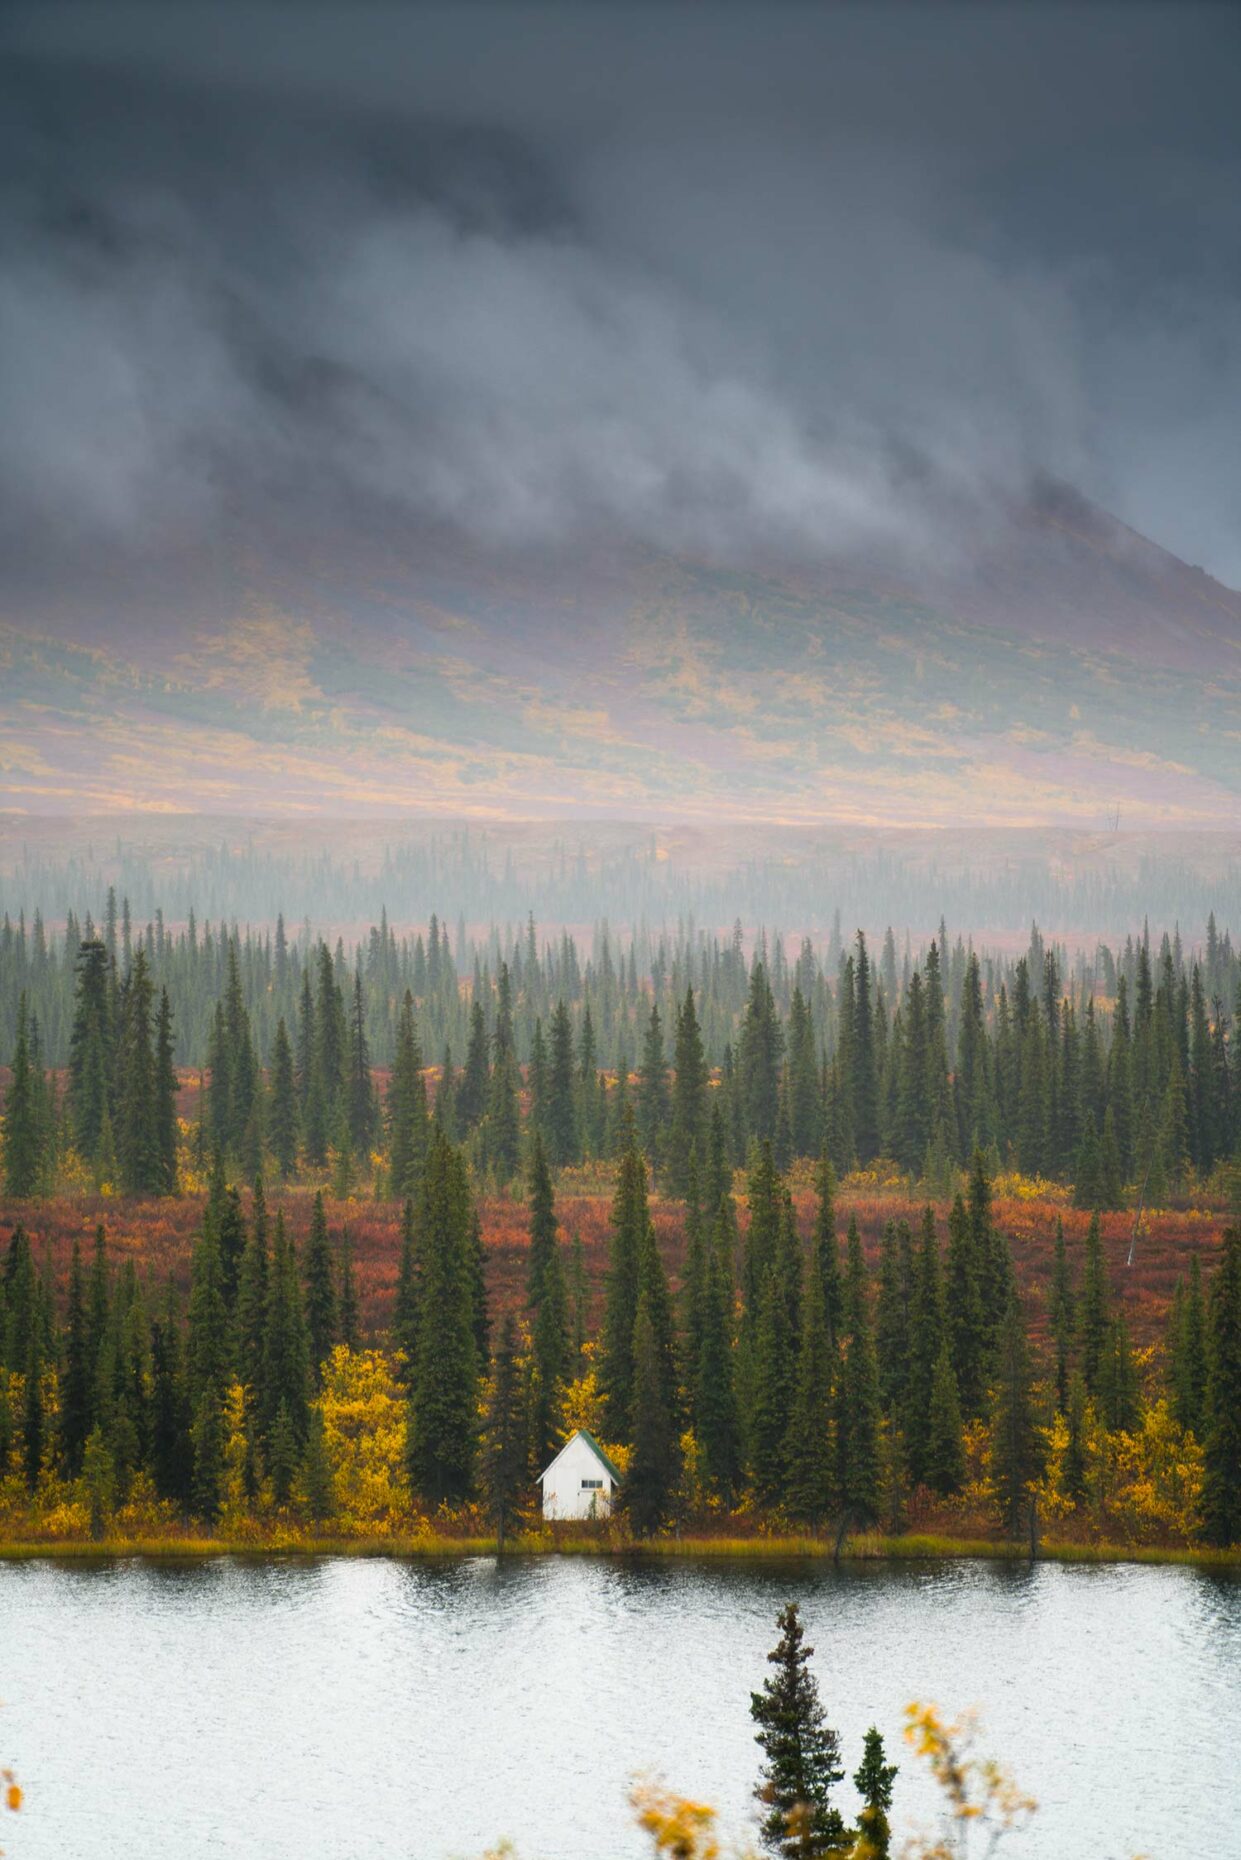 Chris Burkard, Trapper Creek, Alaska